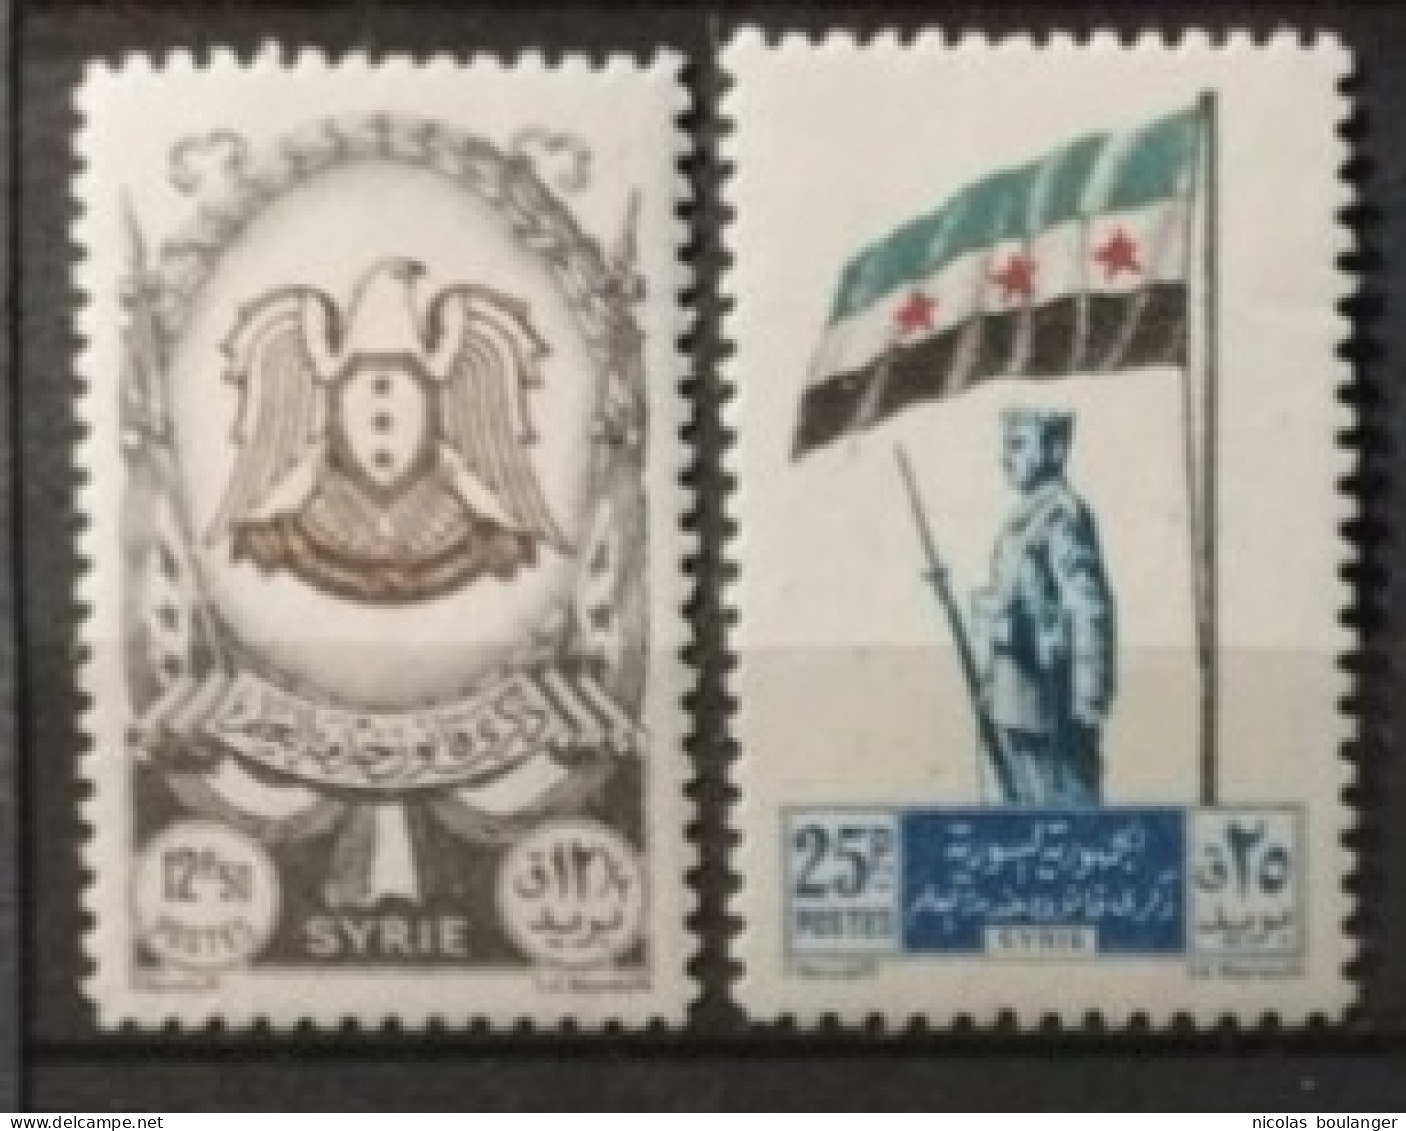 Syrie 1948 / Yvert N°28-29 / * - Syrie